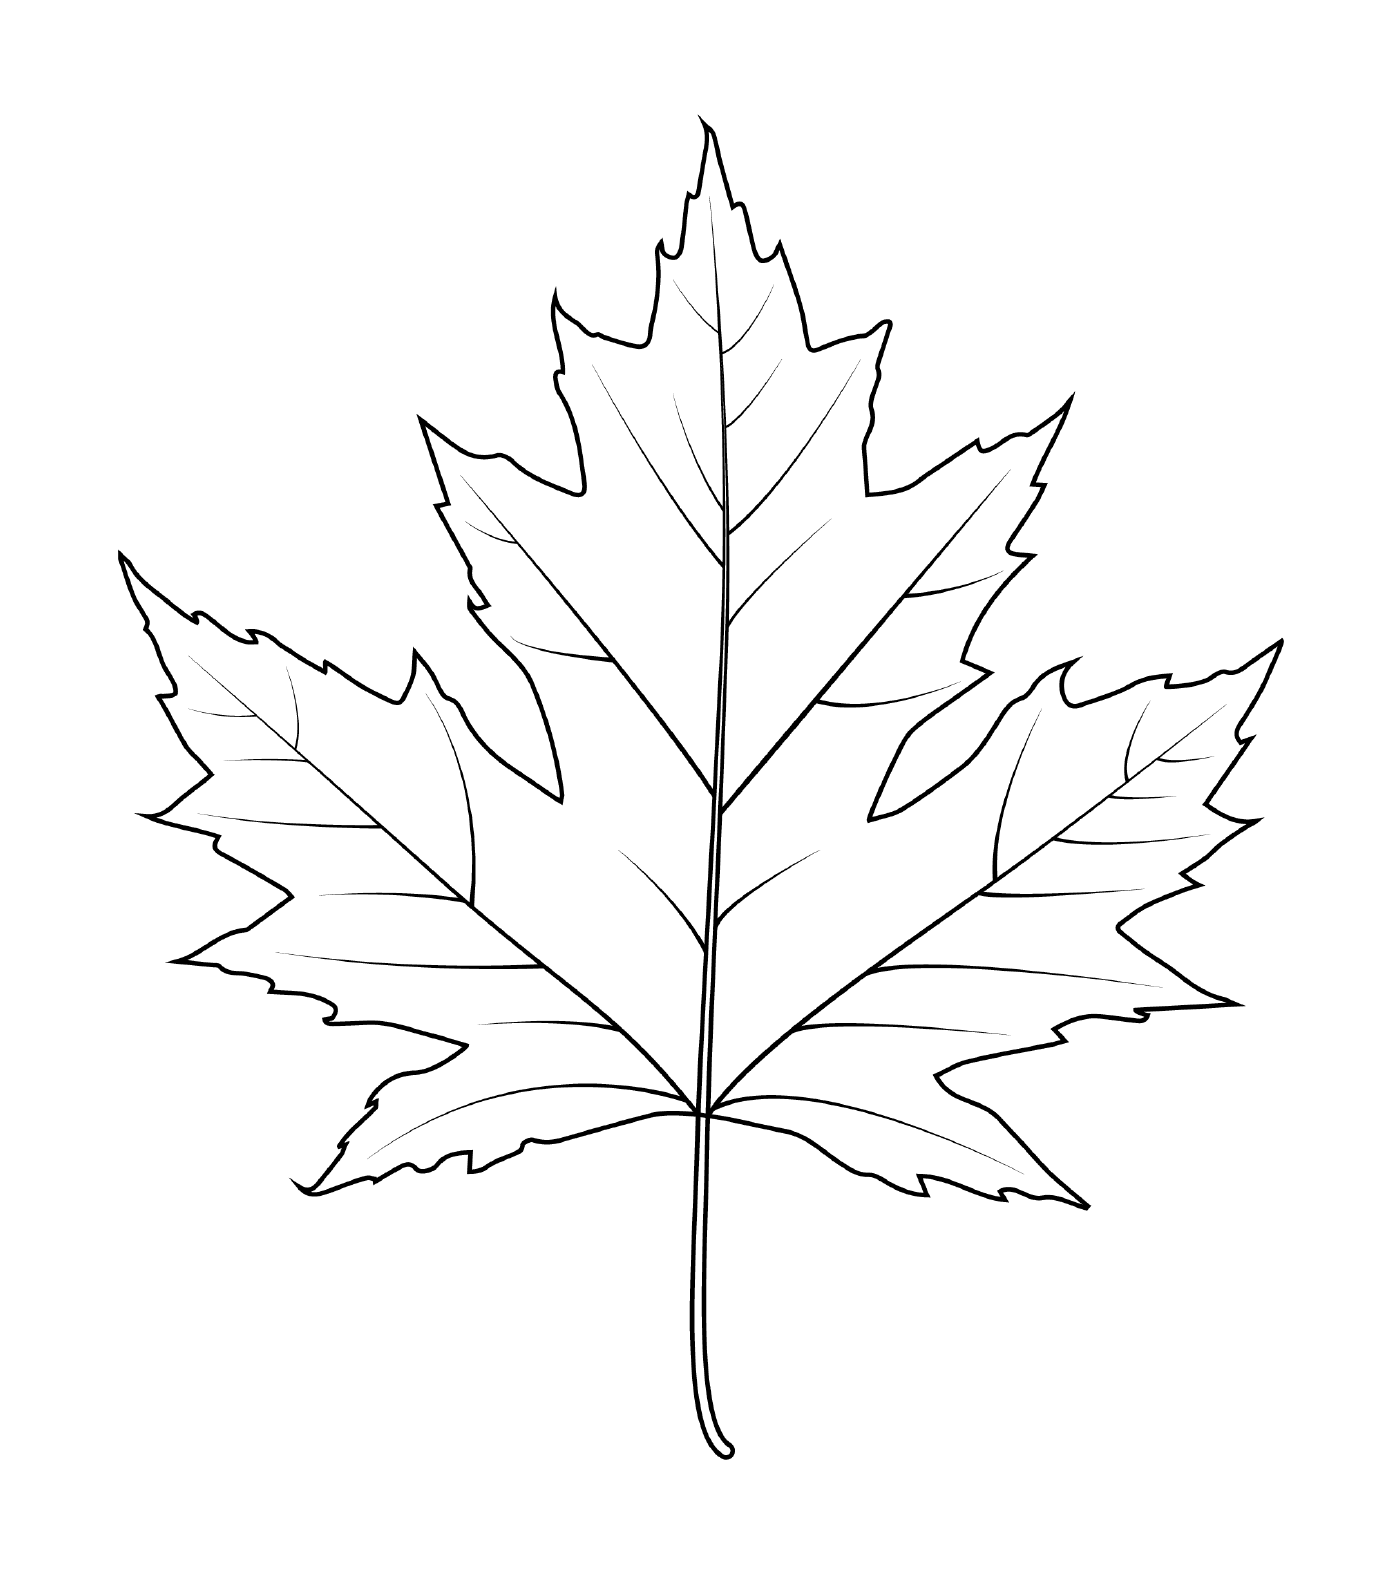  Drawn sugar maple leaf 